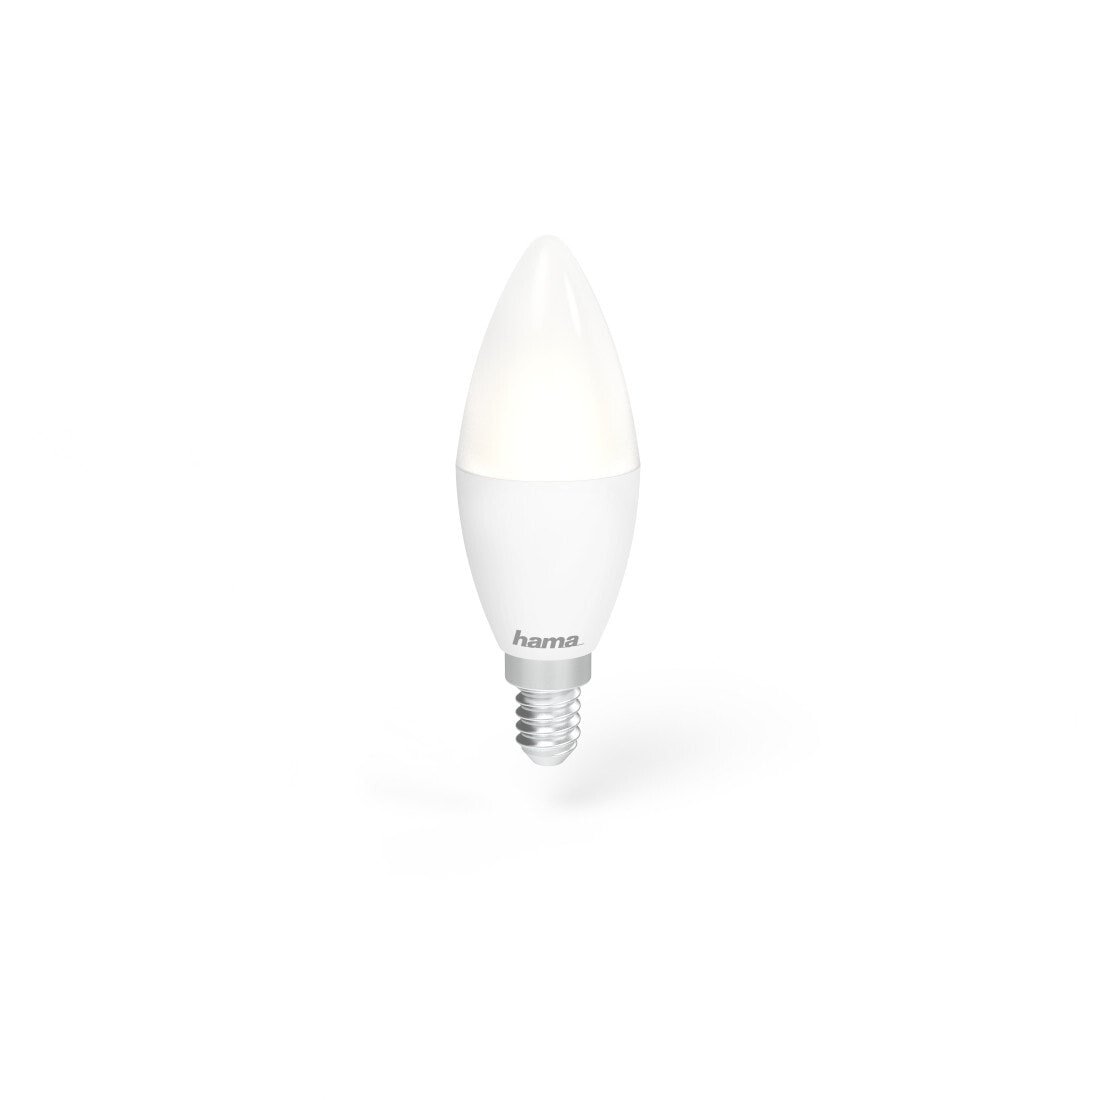 Hama 00176602 energy-saving lamp Дневное освещение, Изменяемый, Теплый белый 5,5 W E14